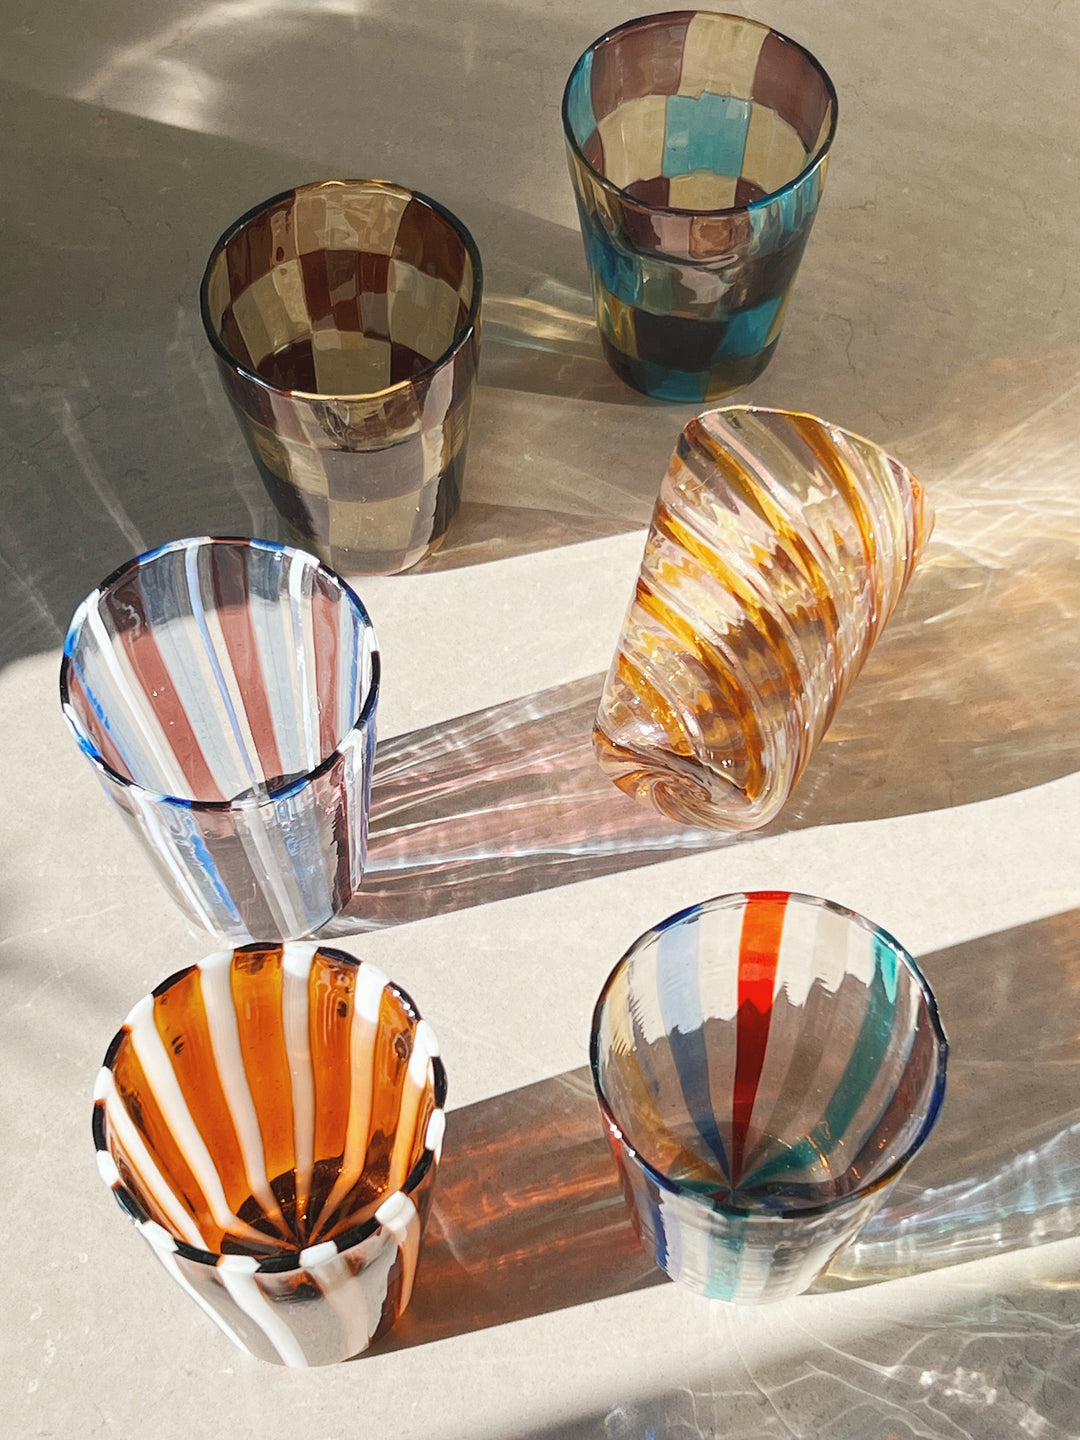 Håndblæst Murano Glas i Gio Ponti Stil med Saltkaramel og hvide Striber Murano